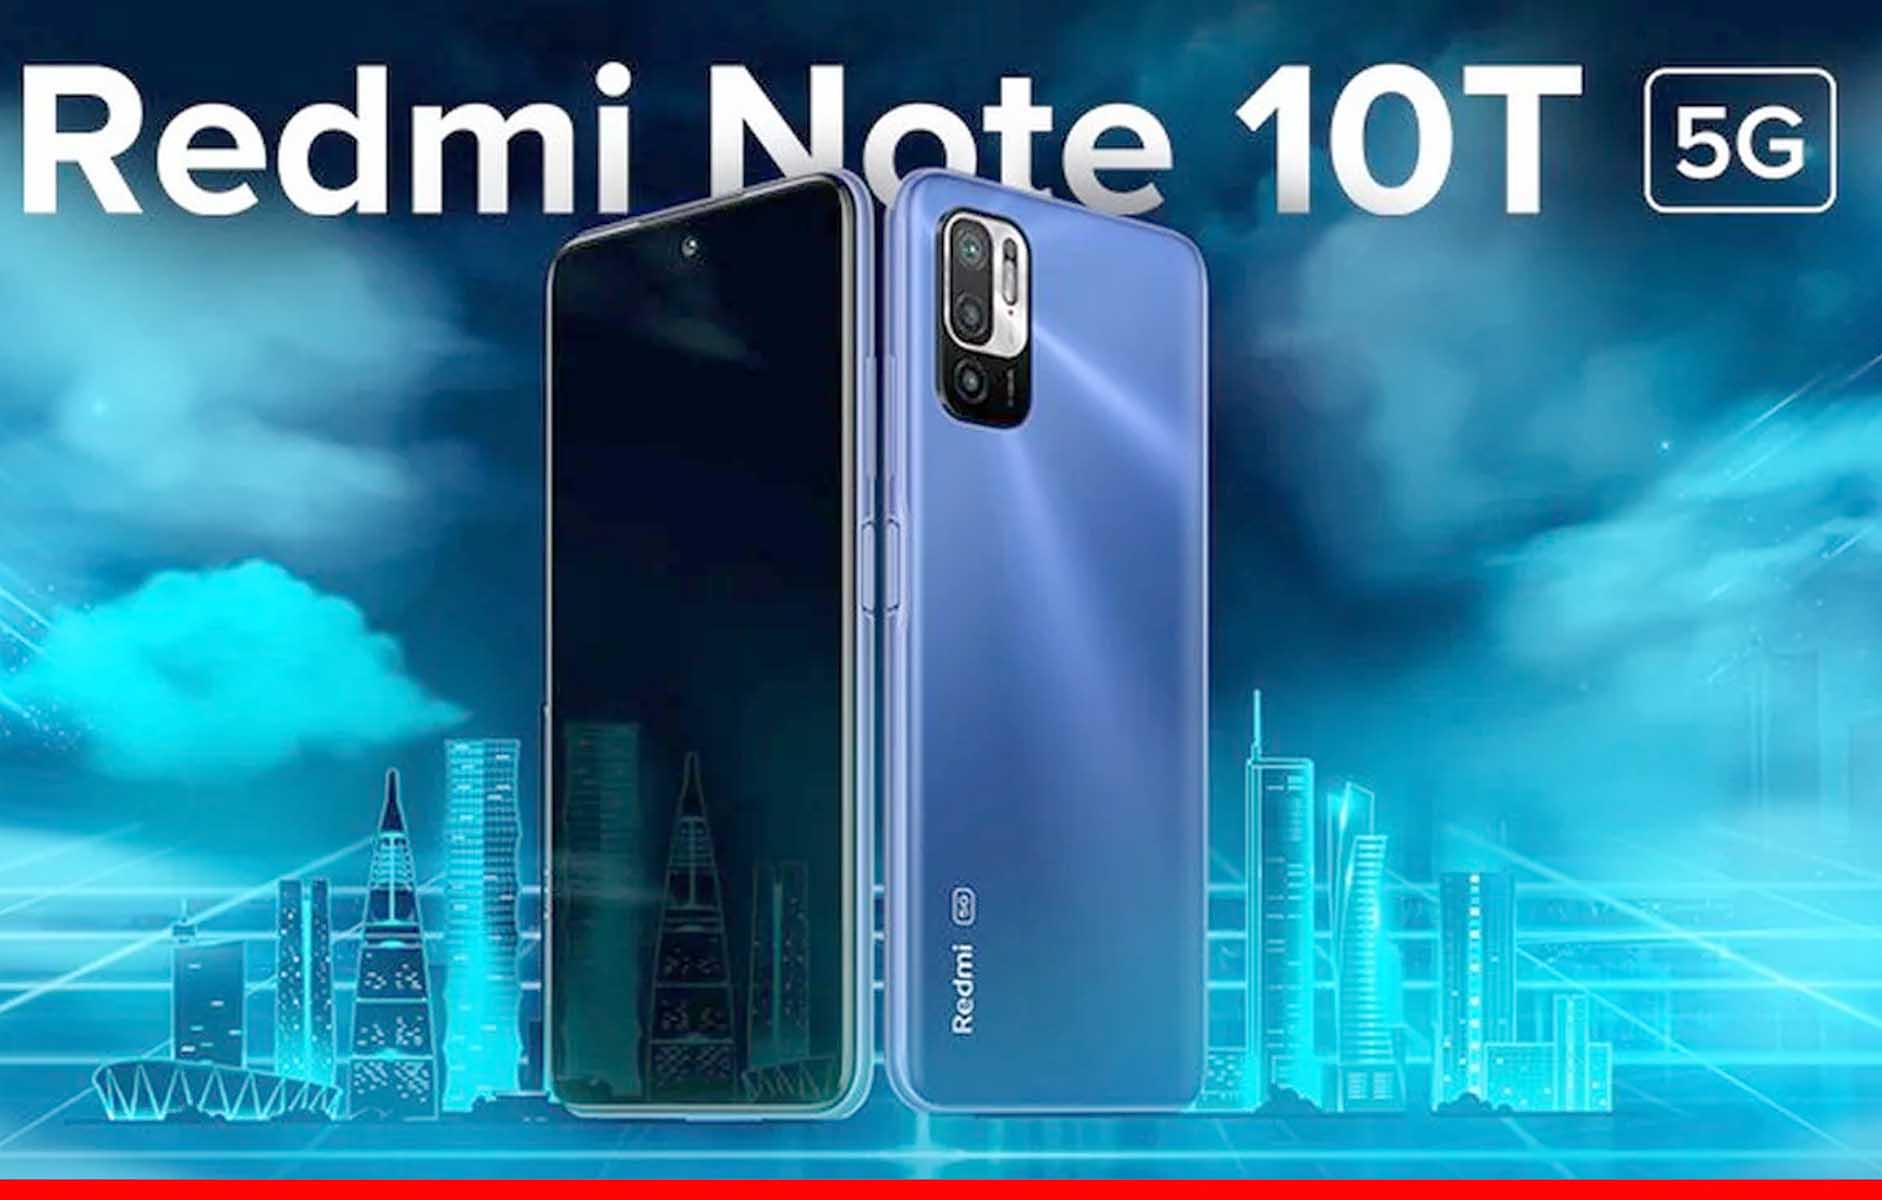 लॉन्च हुआ सस्ता 5G स्मार्टफोन Redmi Note 10T 5G 